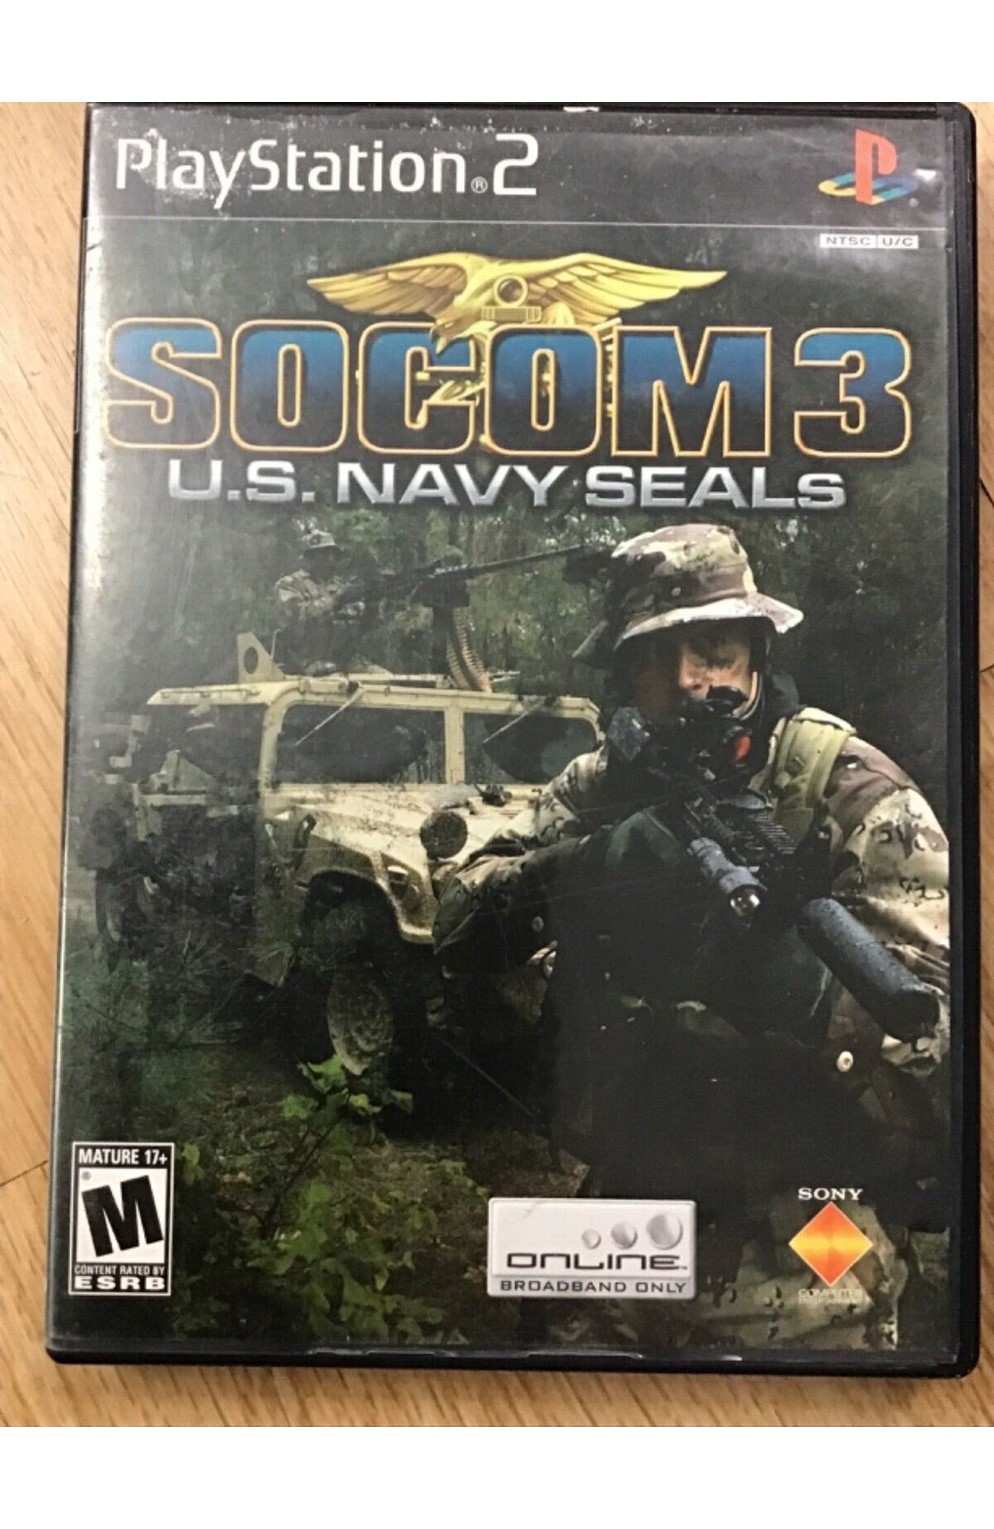 Playstation 2 Ps2 Socom 3 Navy Seals